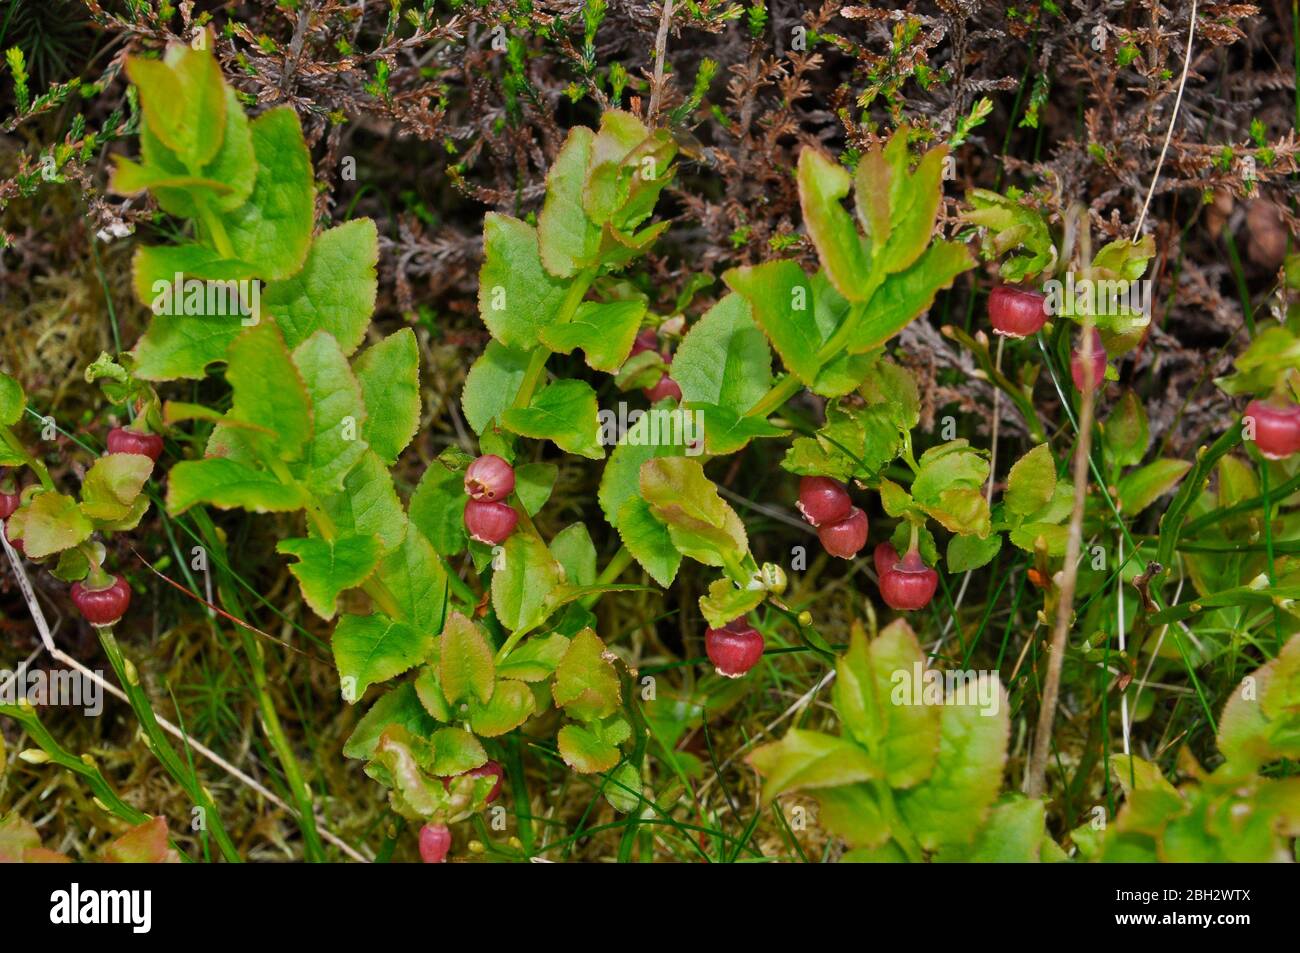 Heidelbeere (Vaccinium myrtillus) - oder Waldordbeere, Windelbeere, Europäische Heidelbeere.Rote Blüten im Frühjahr.Heidemoor, offene Wälder auf sauren Böden. Stockfoto